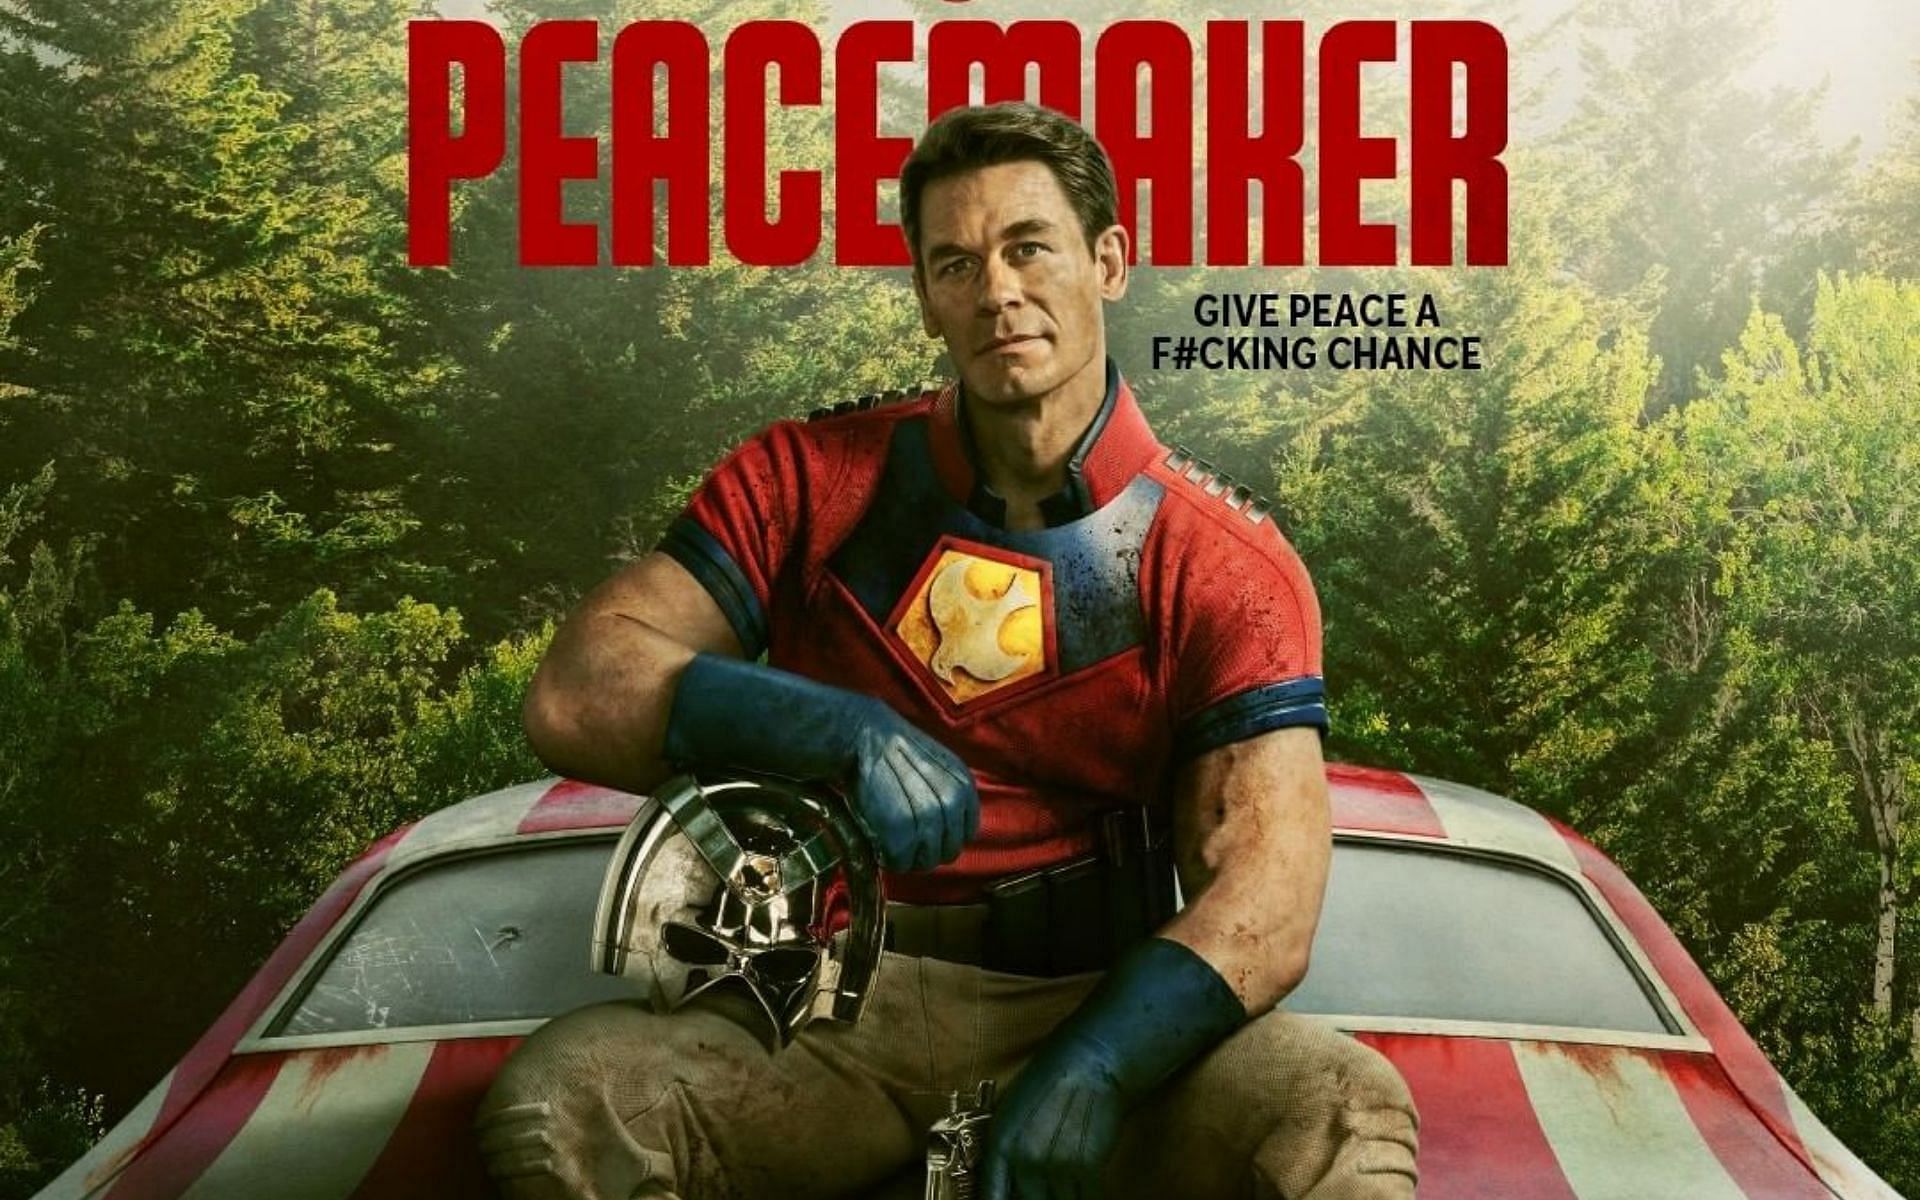 Peacemaker Season 1, Episode 8 is arriving soon on HBO Max (Image Via Sportskeeda)